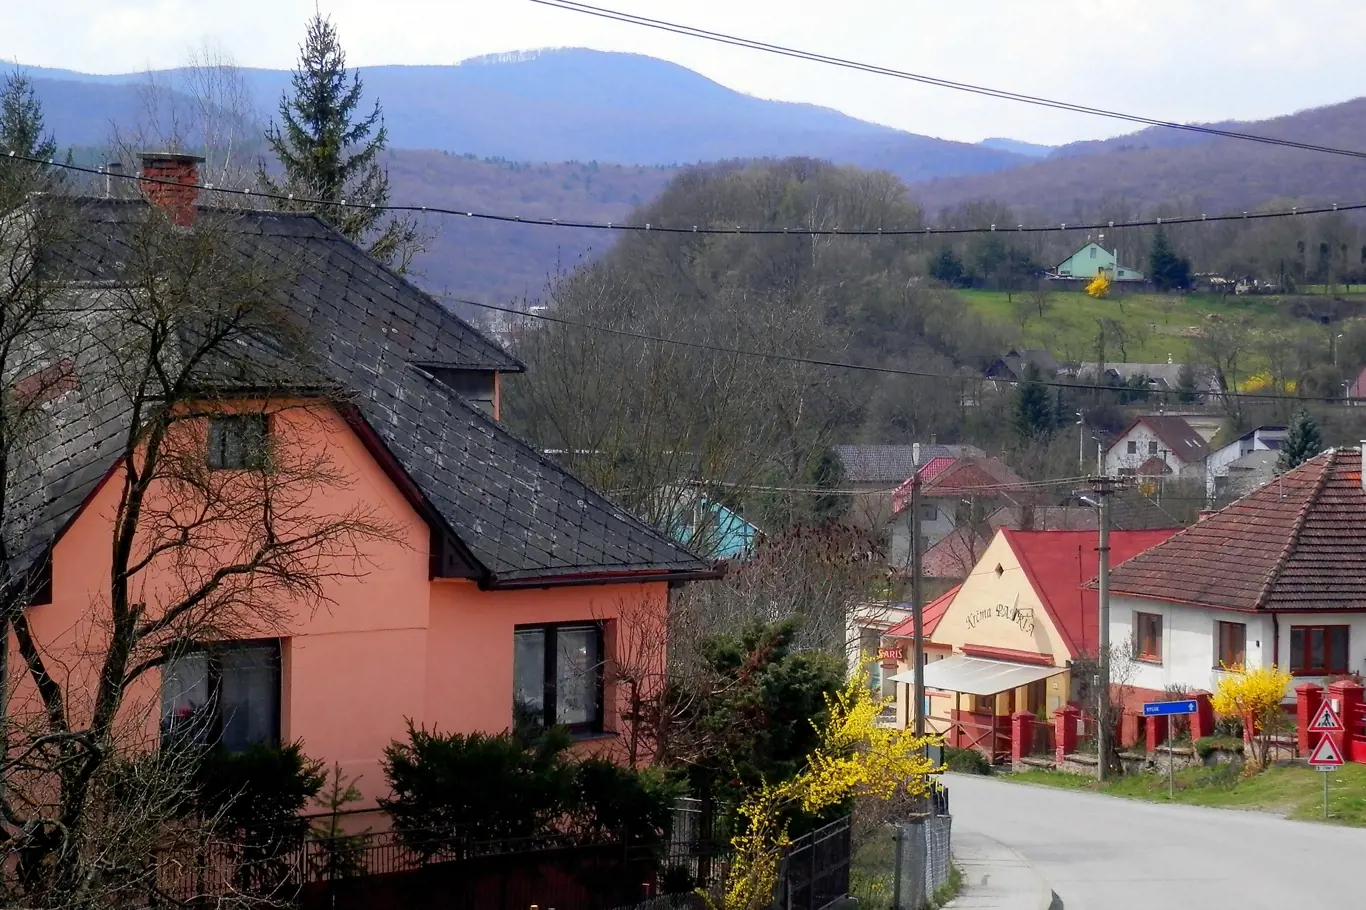 Dnes poklidná vesnice Obišovice u Košic vždy tak klidná nebyla.